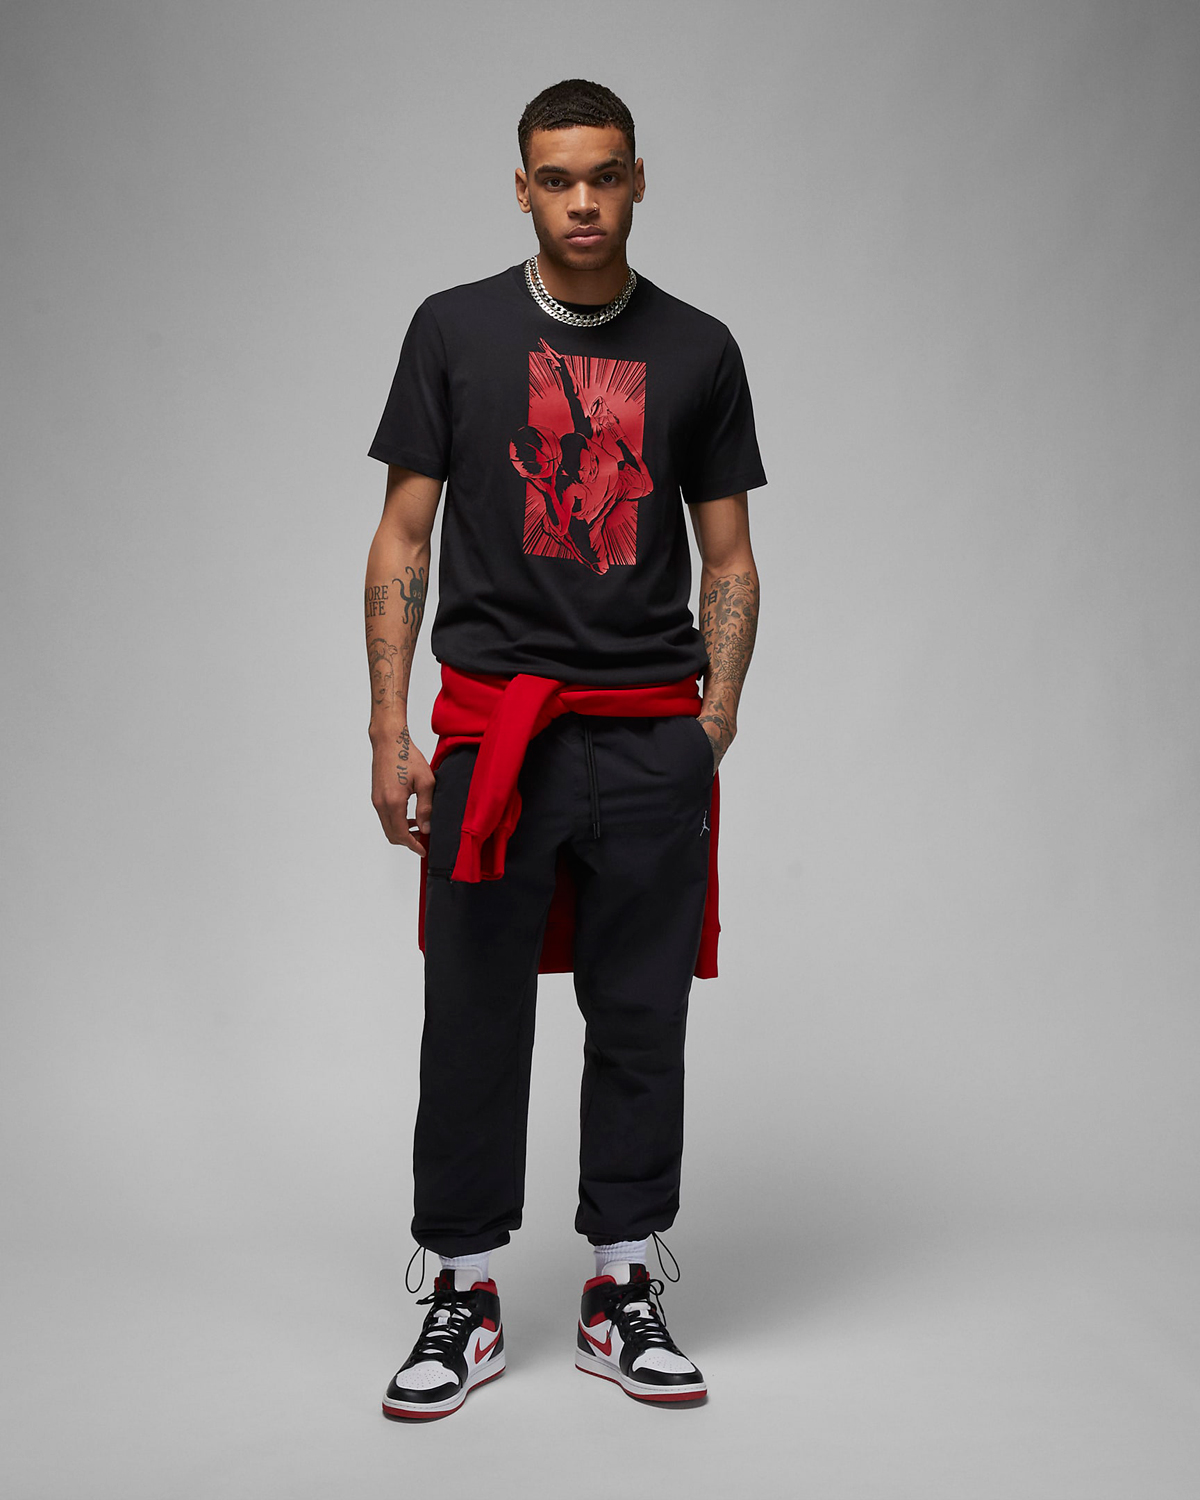 Jordan-Brand-MJ-Dunk-T-Shirt-Black-Gym-Red-1